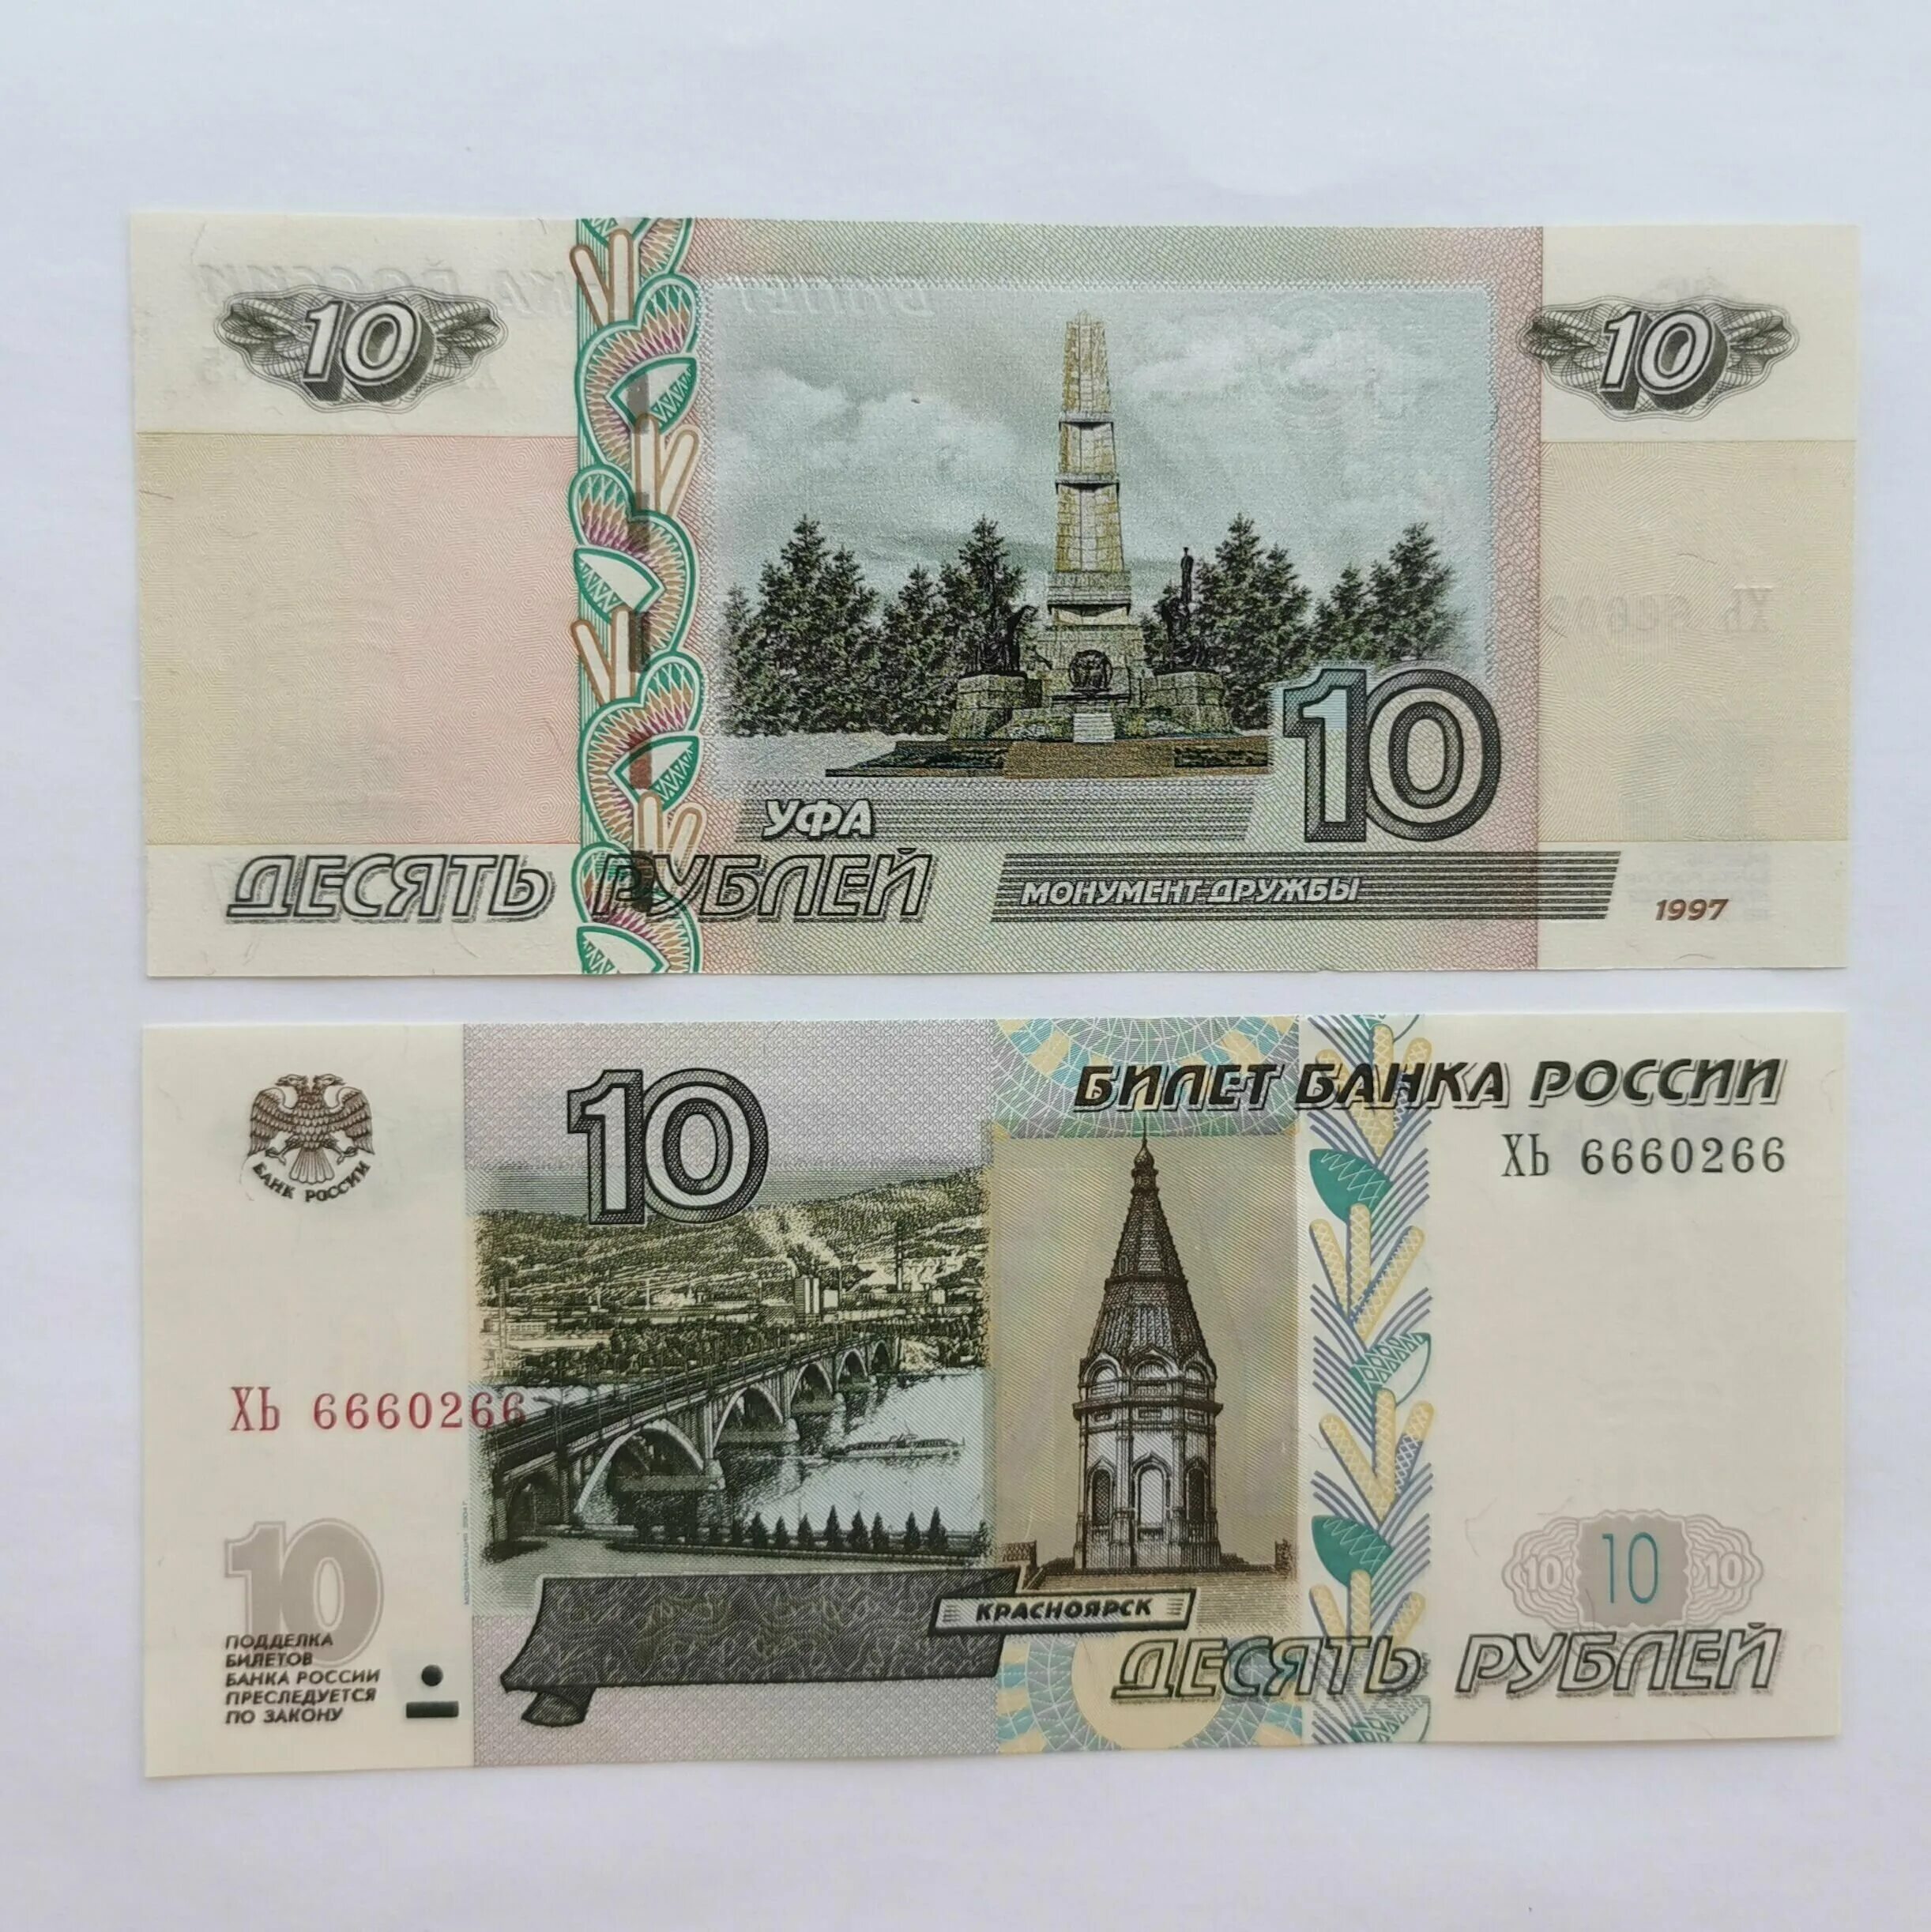 2000 Рублей Уфа. 1000 рублей уфа